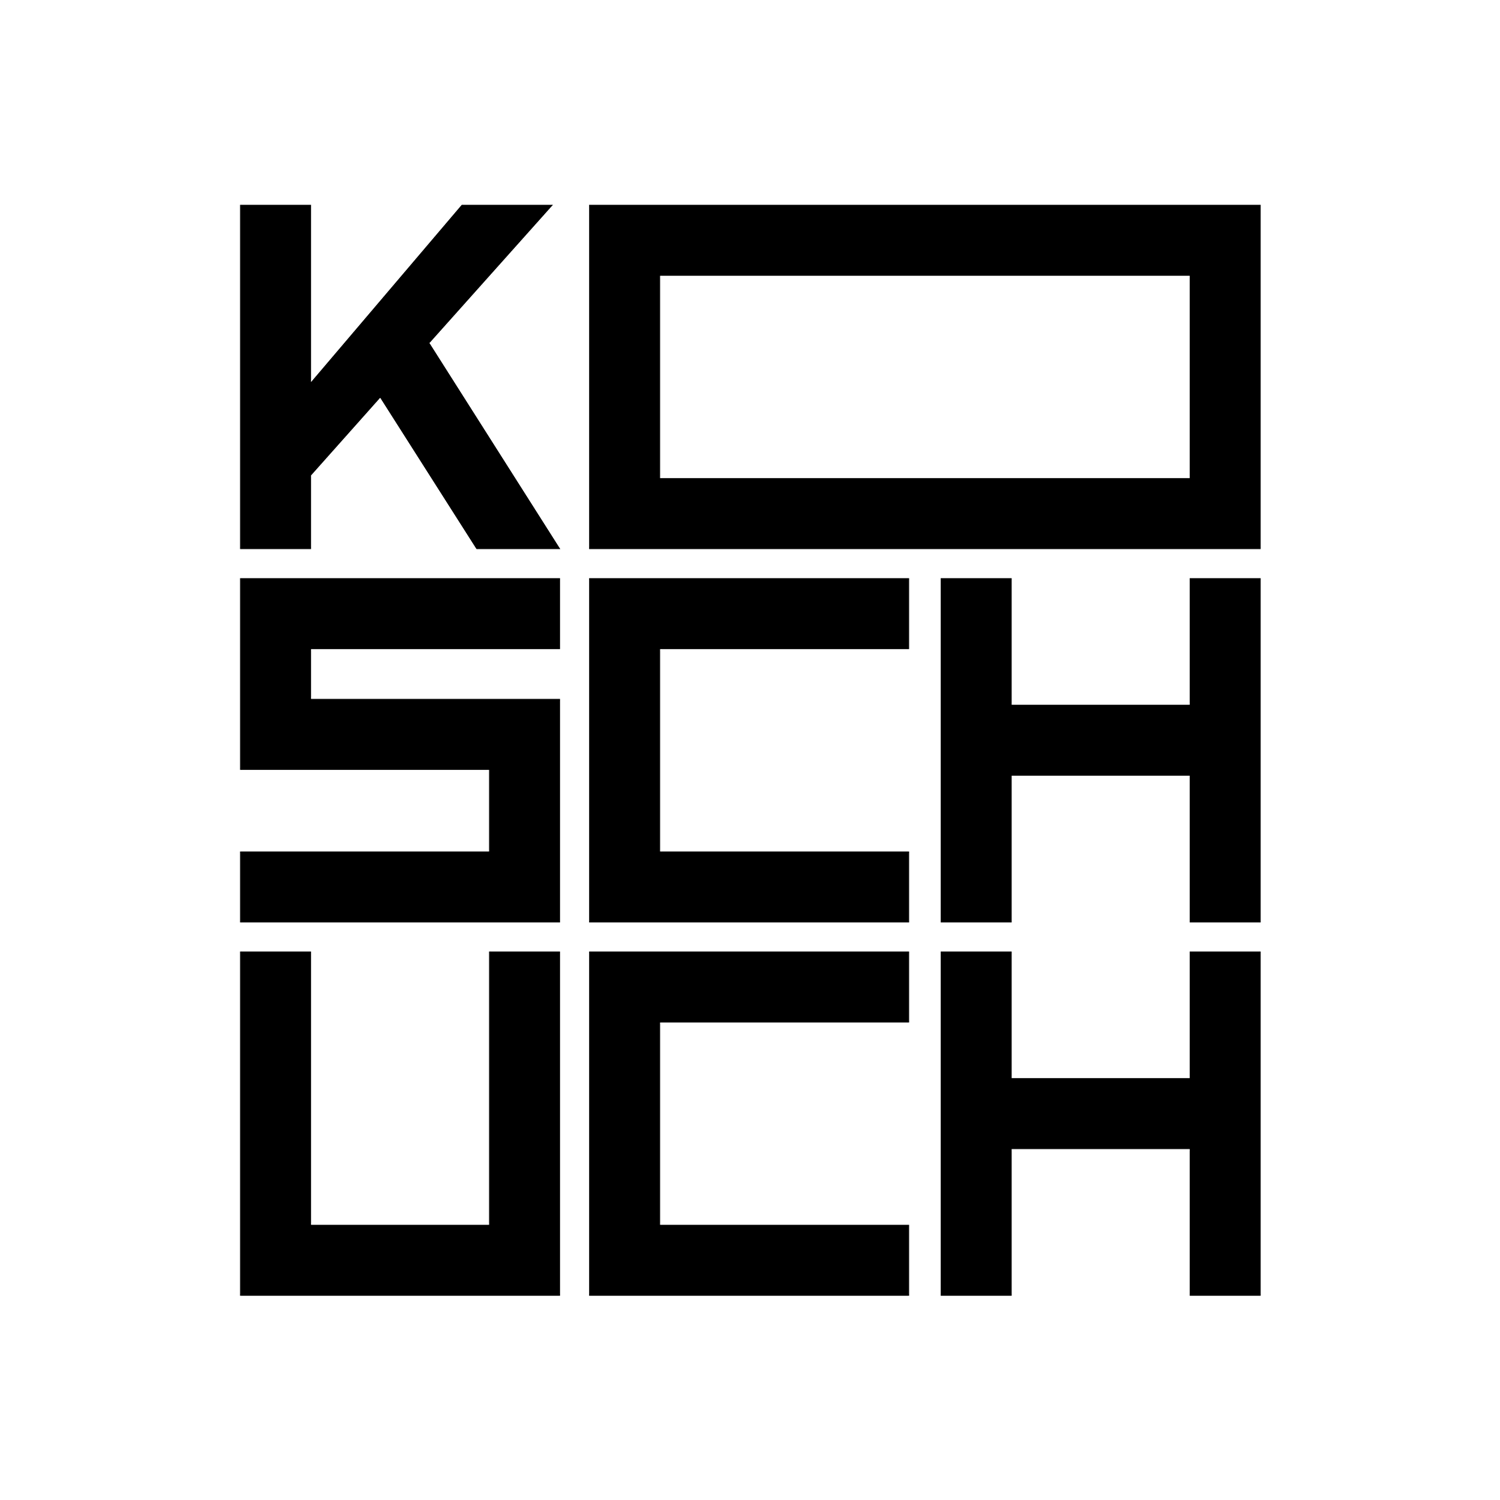 Koschuch Architects